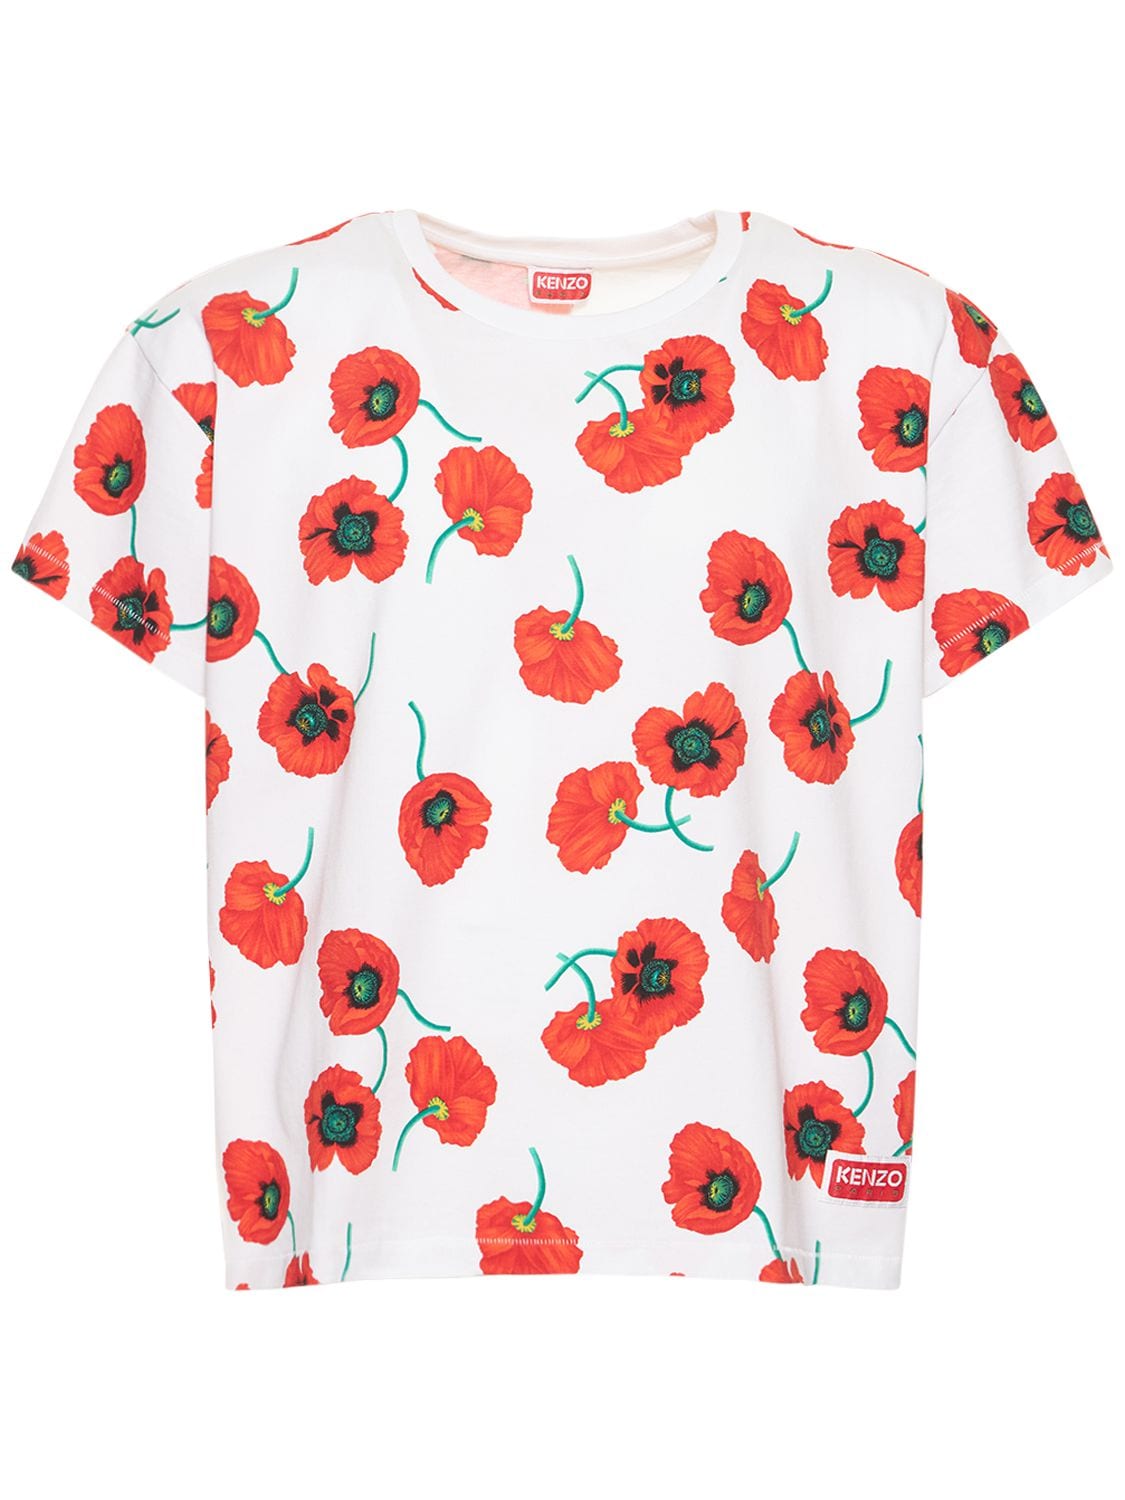 KENZO PARIS Poppy Print Cotton Jersey Boxy T-shirt